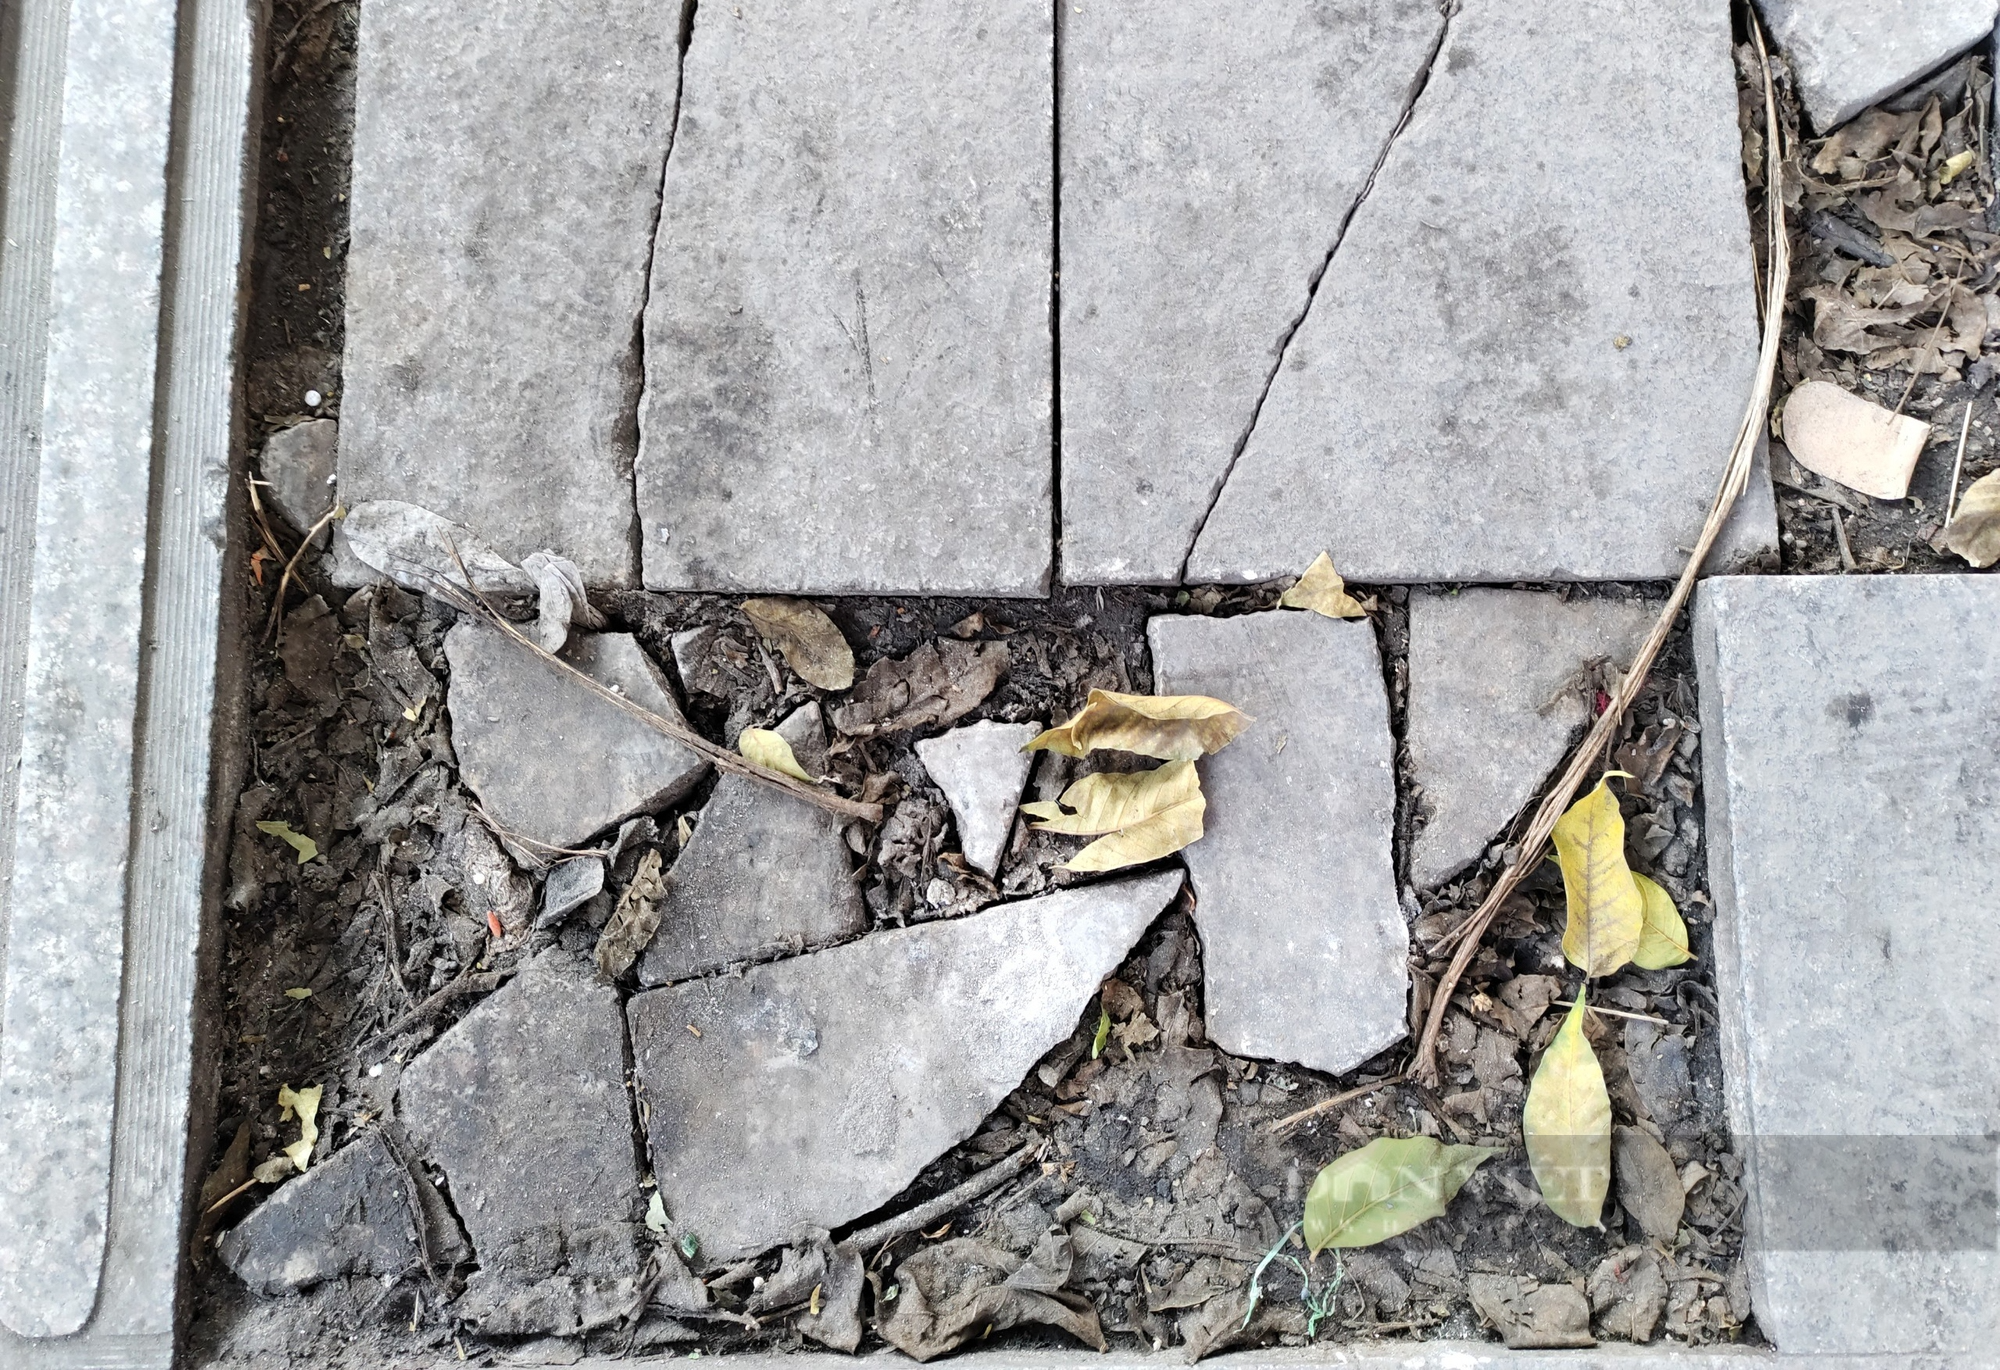 Đá tự nhiên có độ bền 70 năm vỡ nát trên con phố kiểu mẫu ở Hà Nội - Ảnh 3.